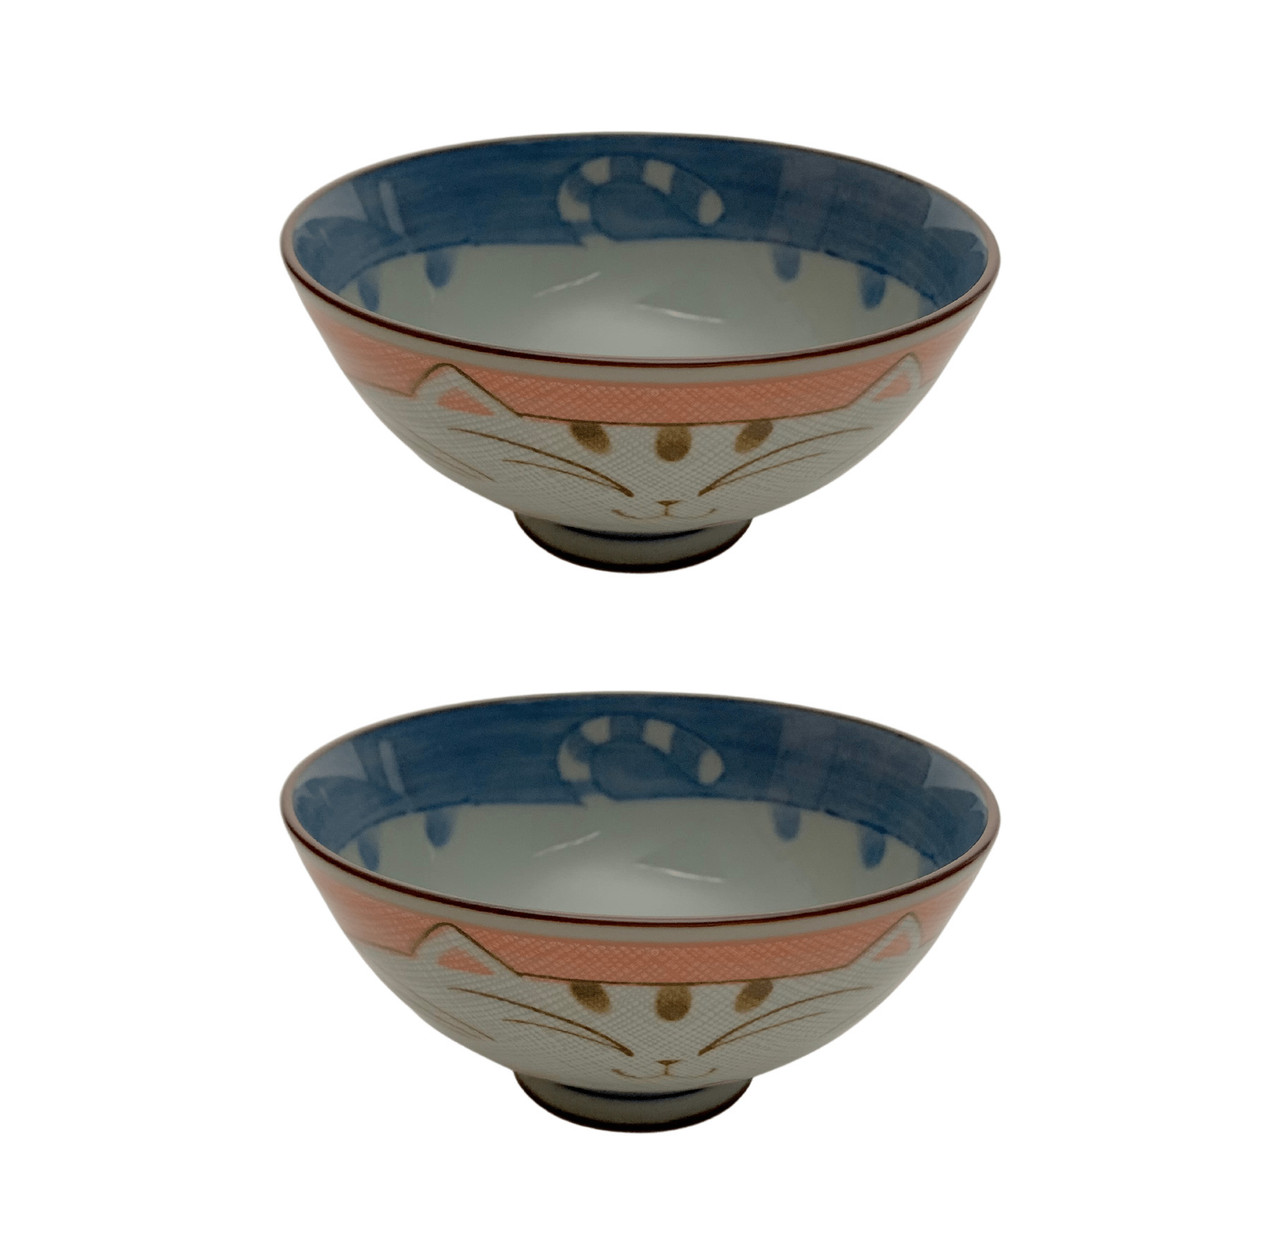 Maneki Neko Smiling Cat Pattern JapanBargain 2, Pink Japanese Porcelain Bowl Rice Bowl Soup Bowl Made in Japan 